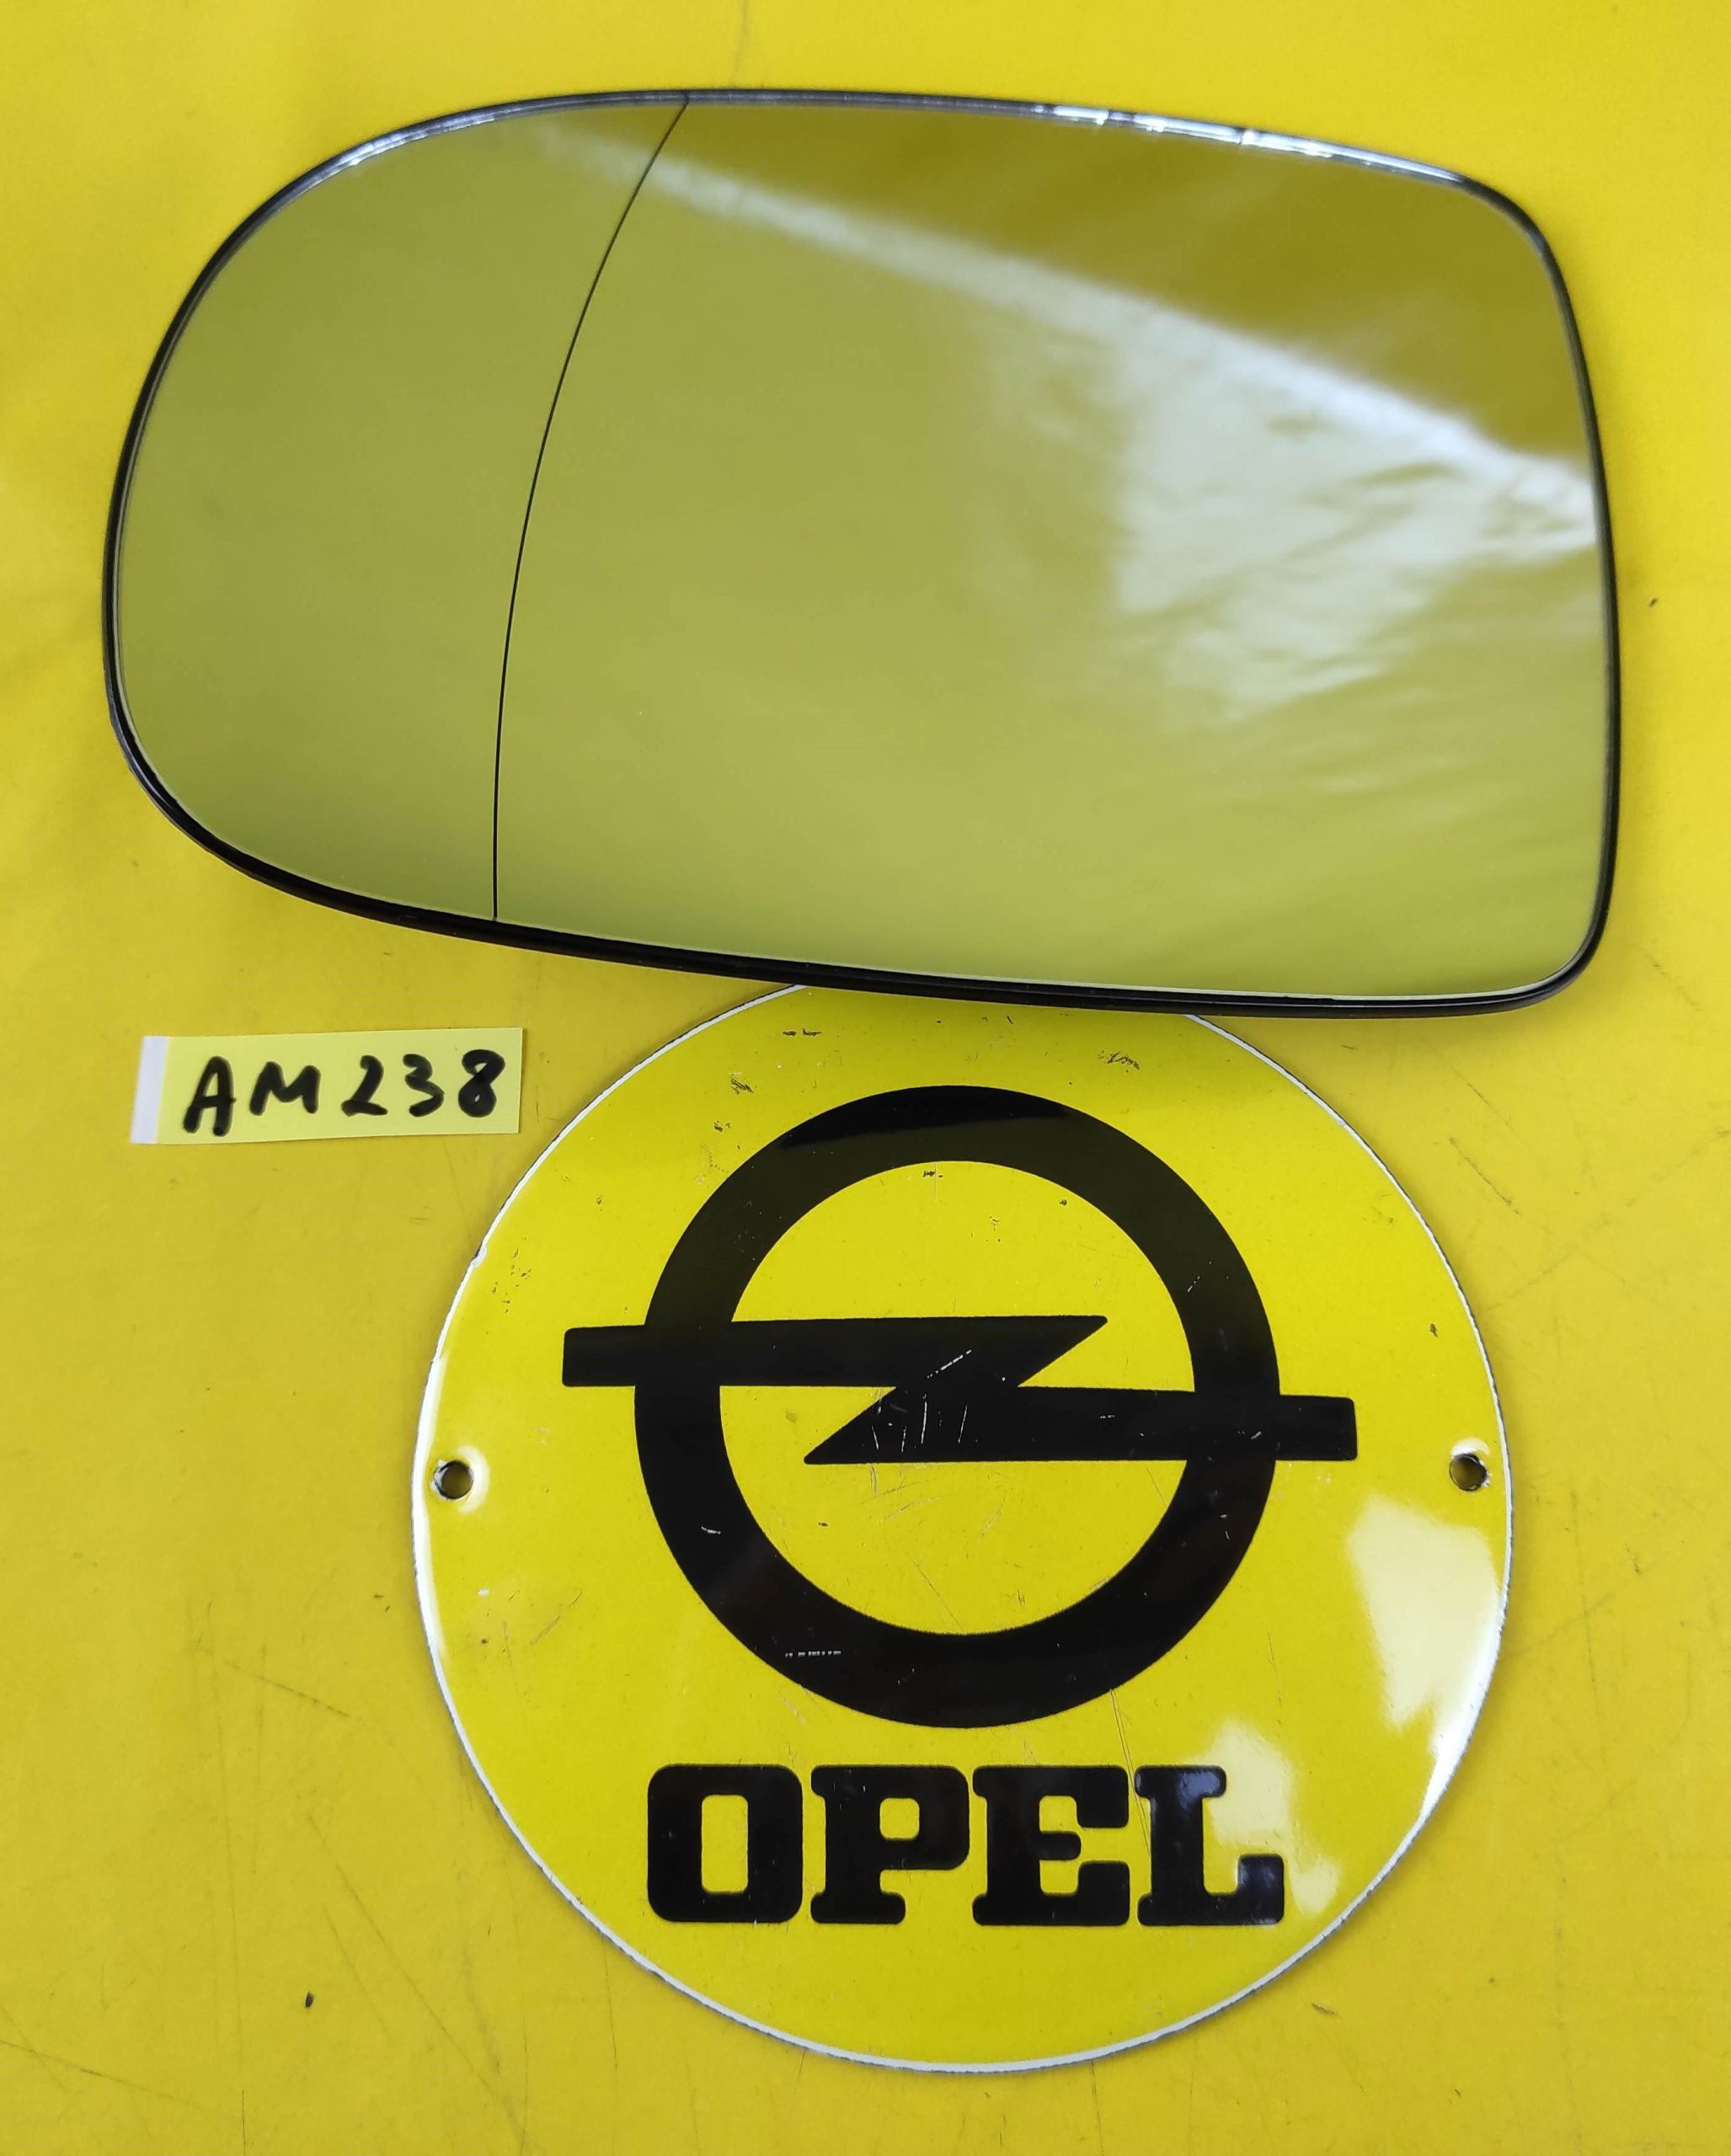 Außenspiegel komplett links beheizbar asphärisch für Opel Corsa C (X0